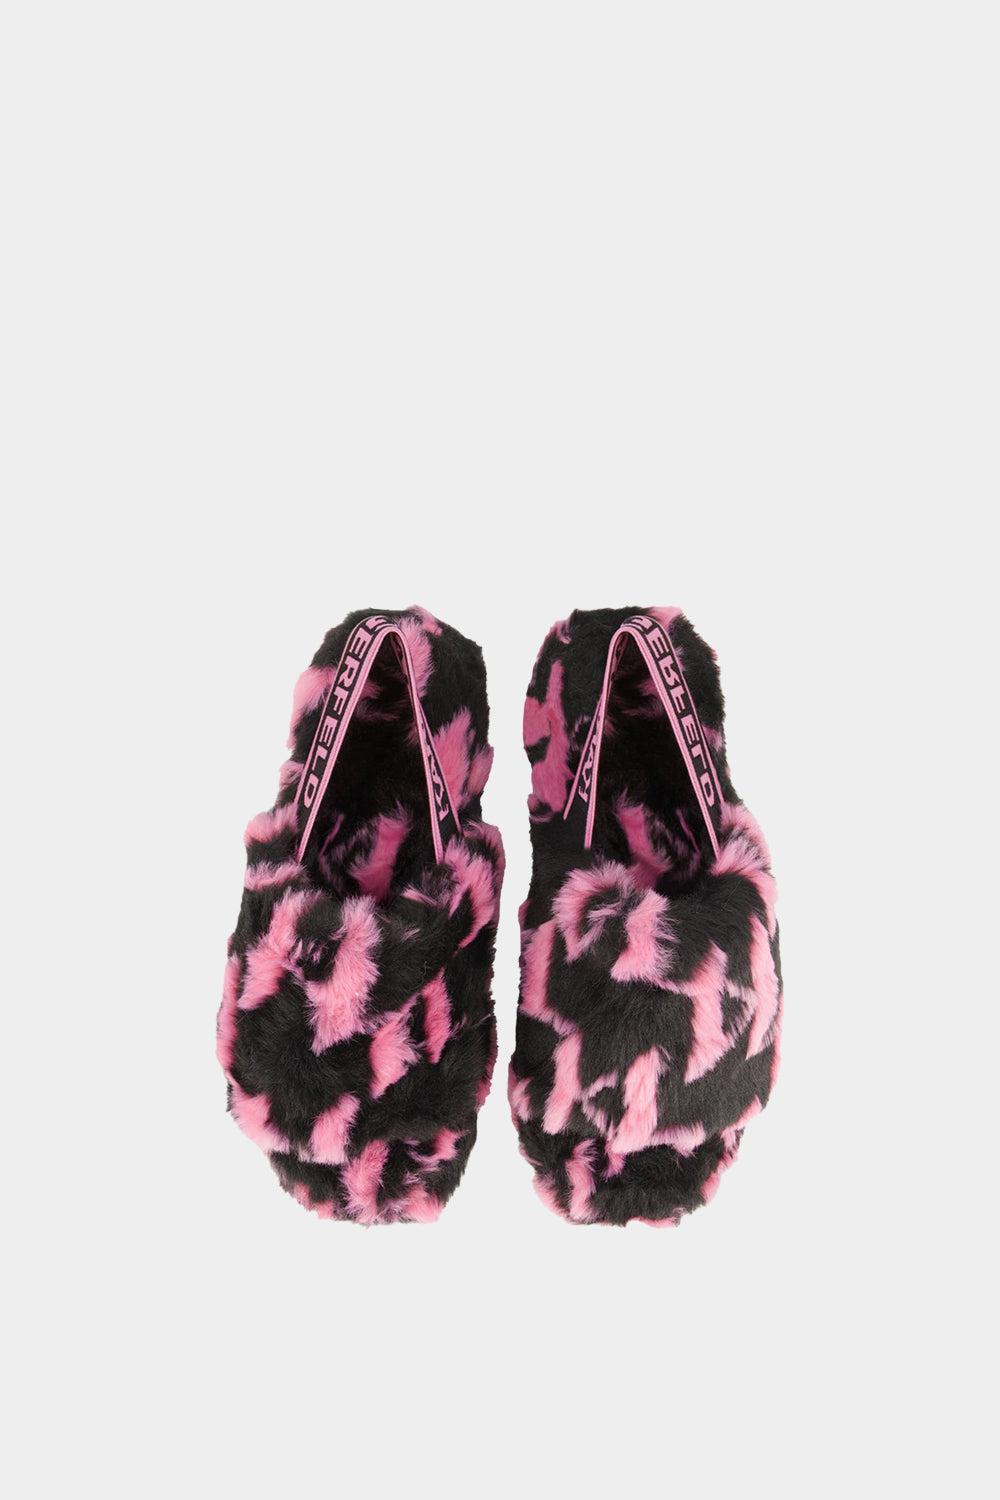 נעלי בית לנשים פרווה אקולוגית KARL LAGERFELD Vendome online | ונדום .